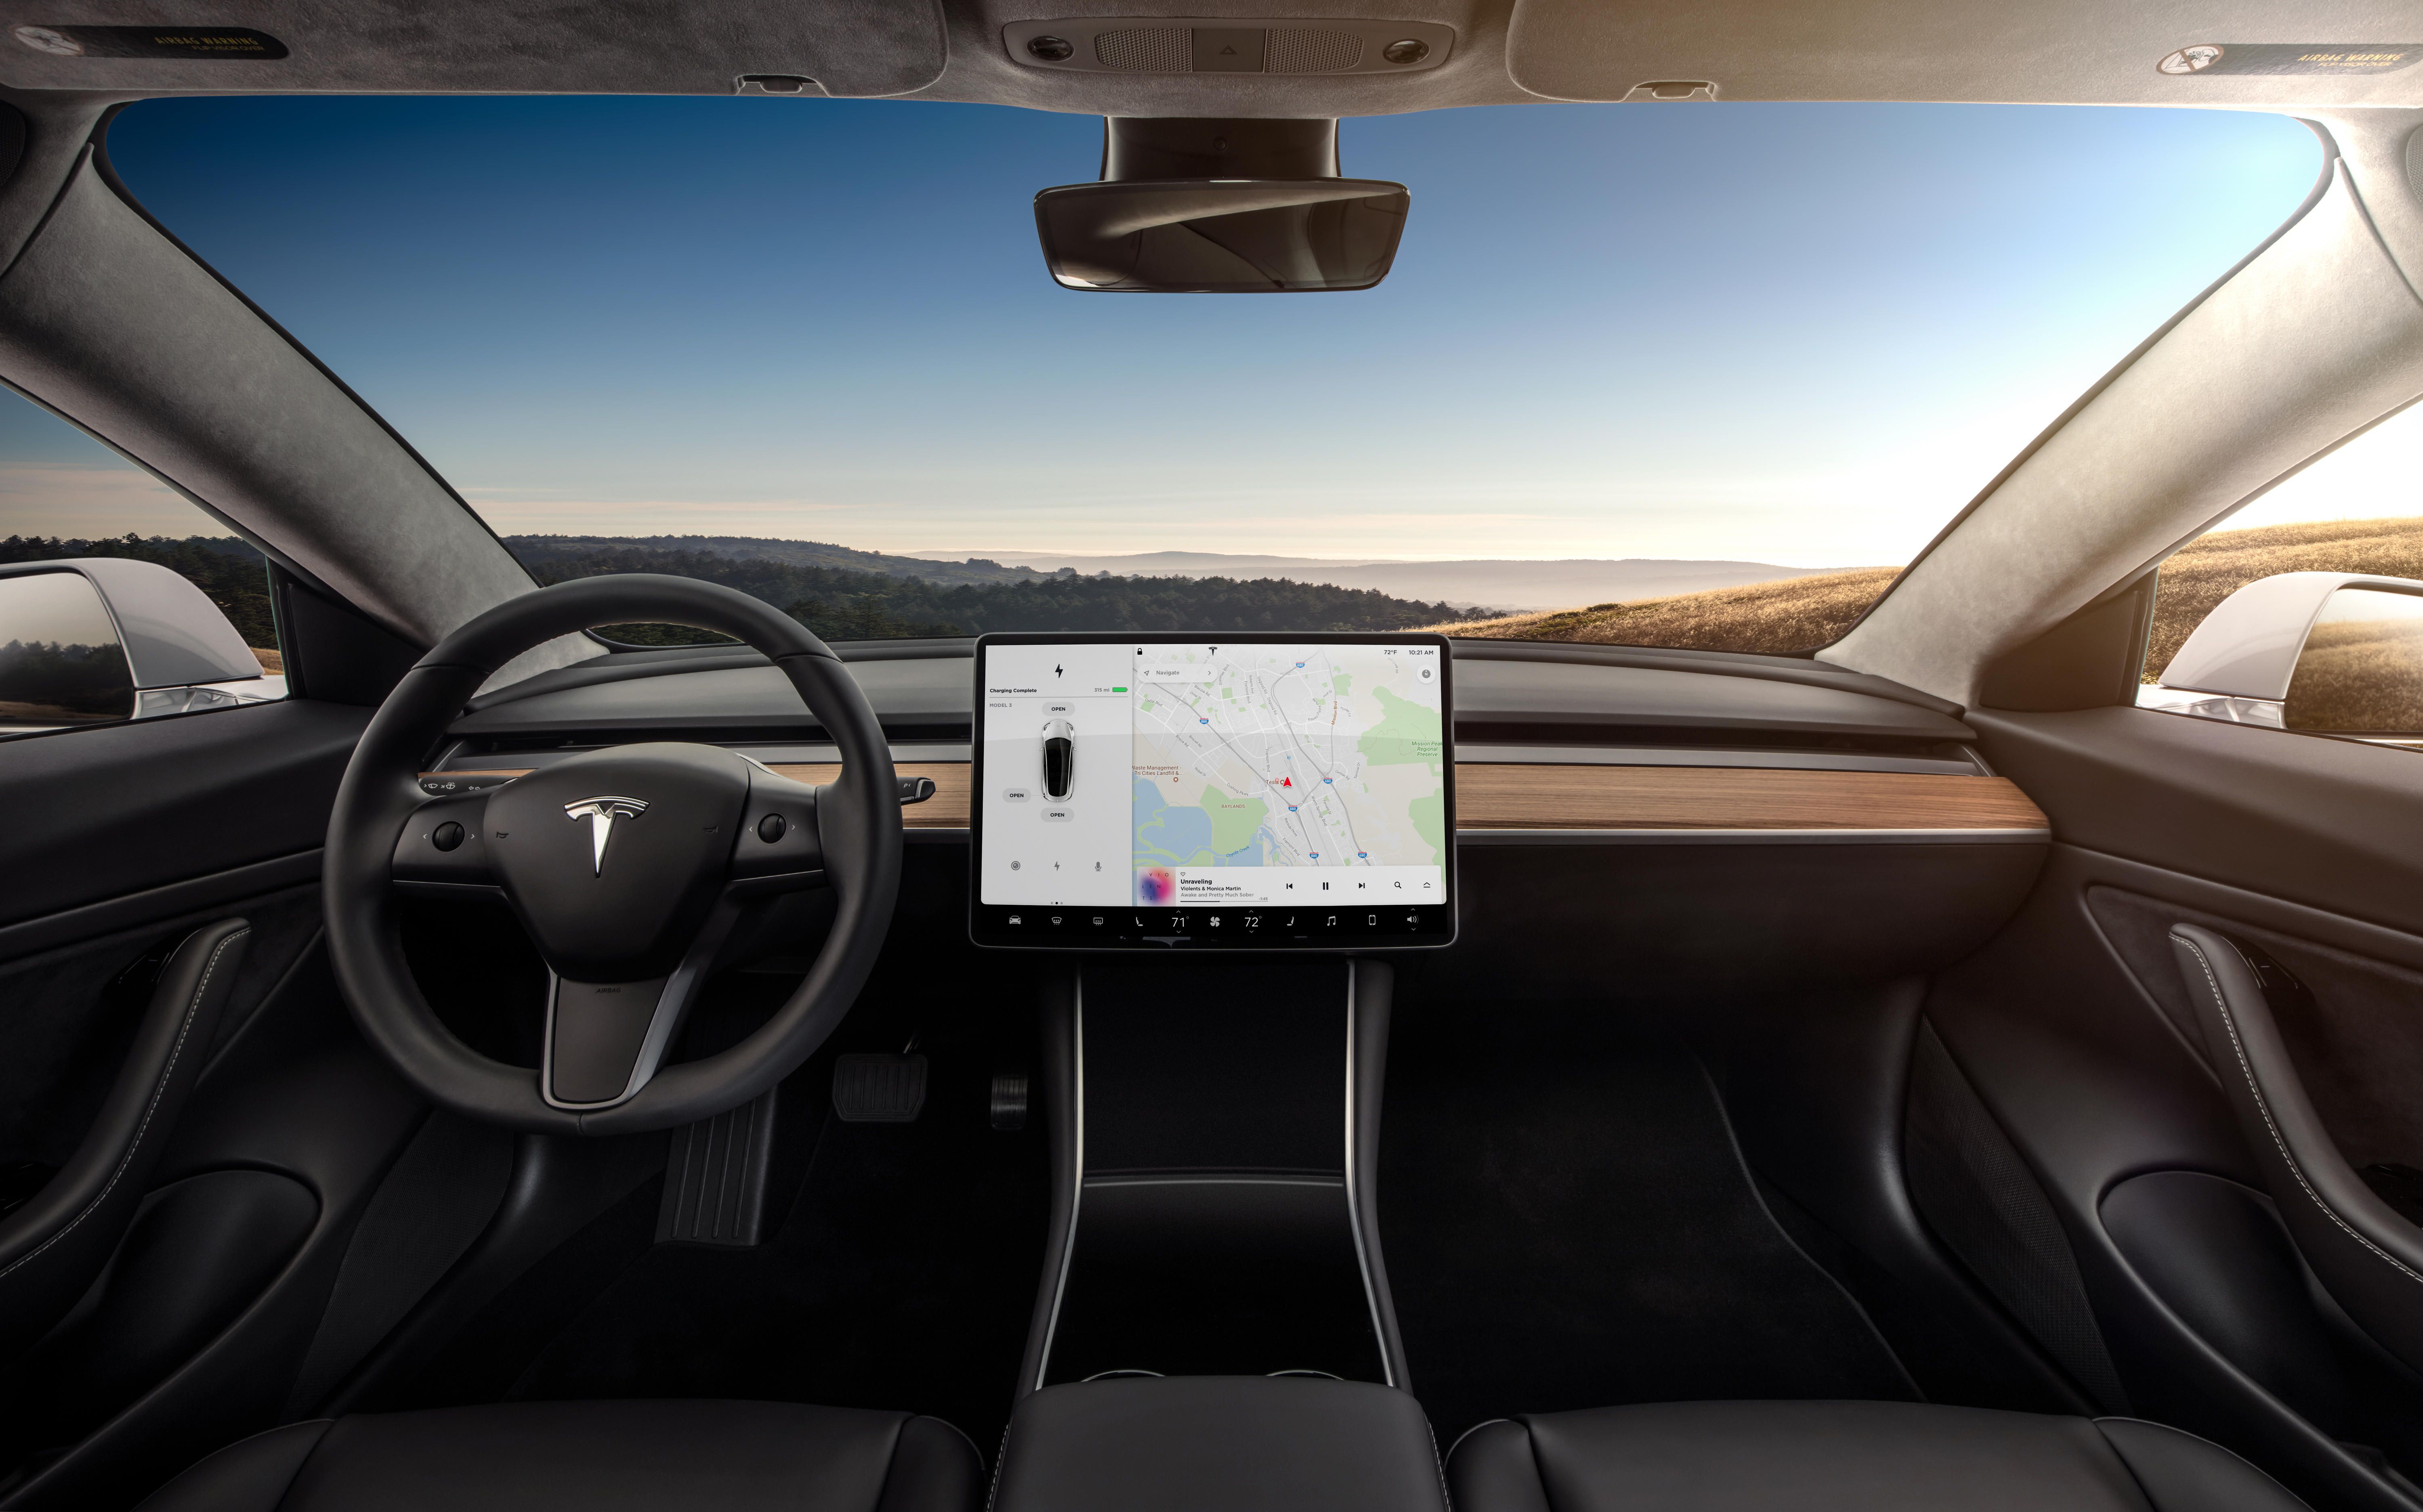 Elon Musk, çift motorlu Tesla Model 3'ün bazı teknik detayları ve fiyatını açıkladı